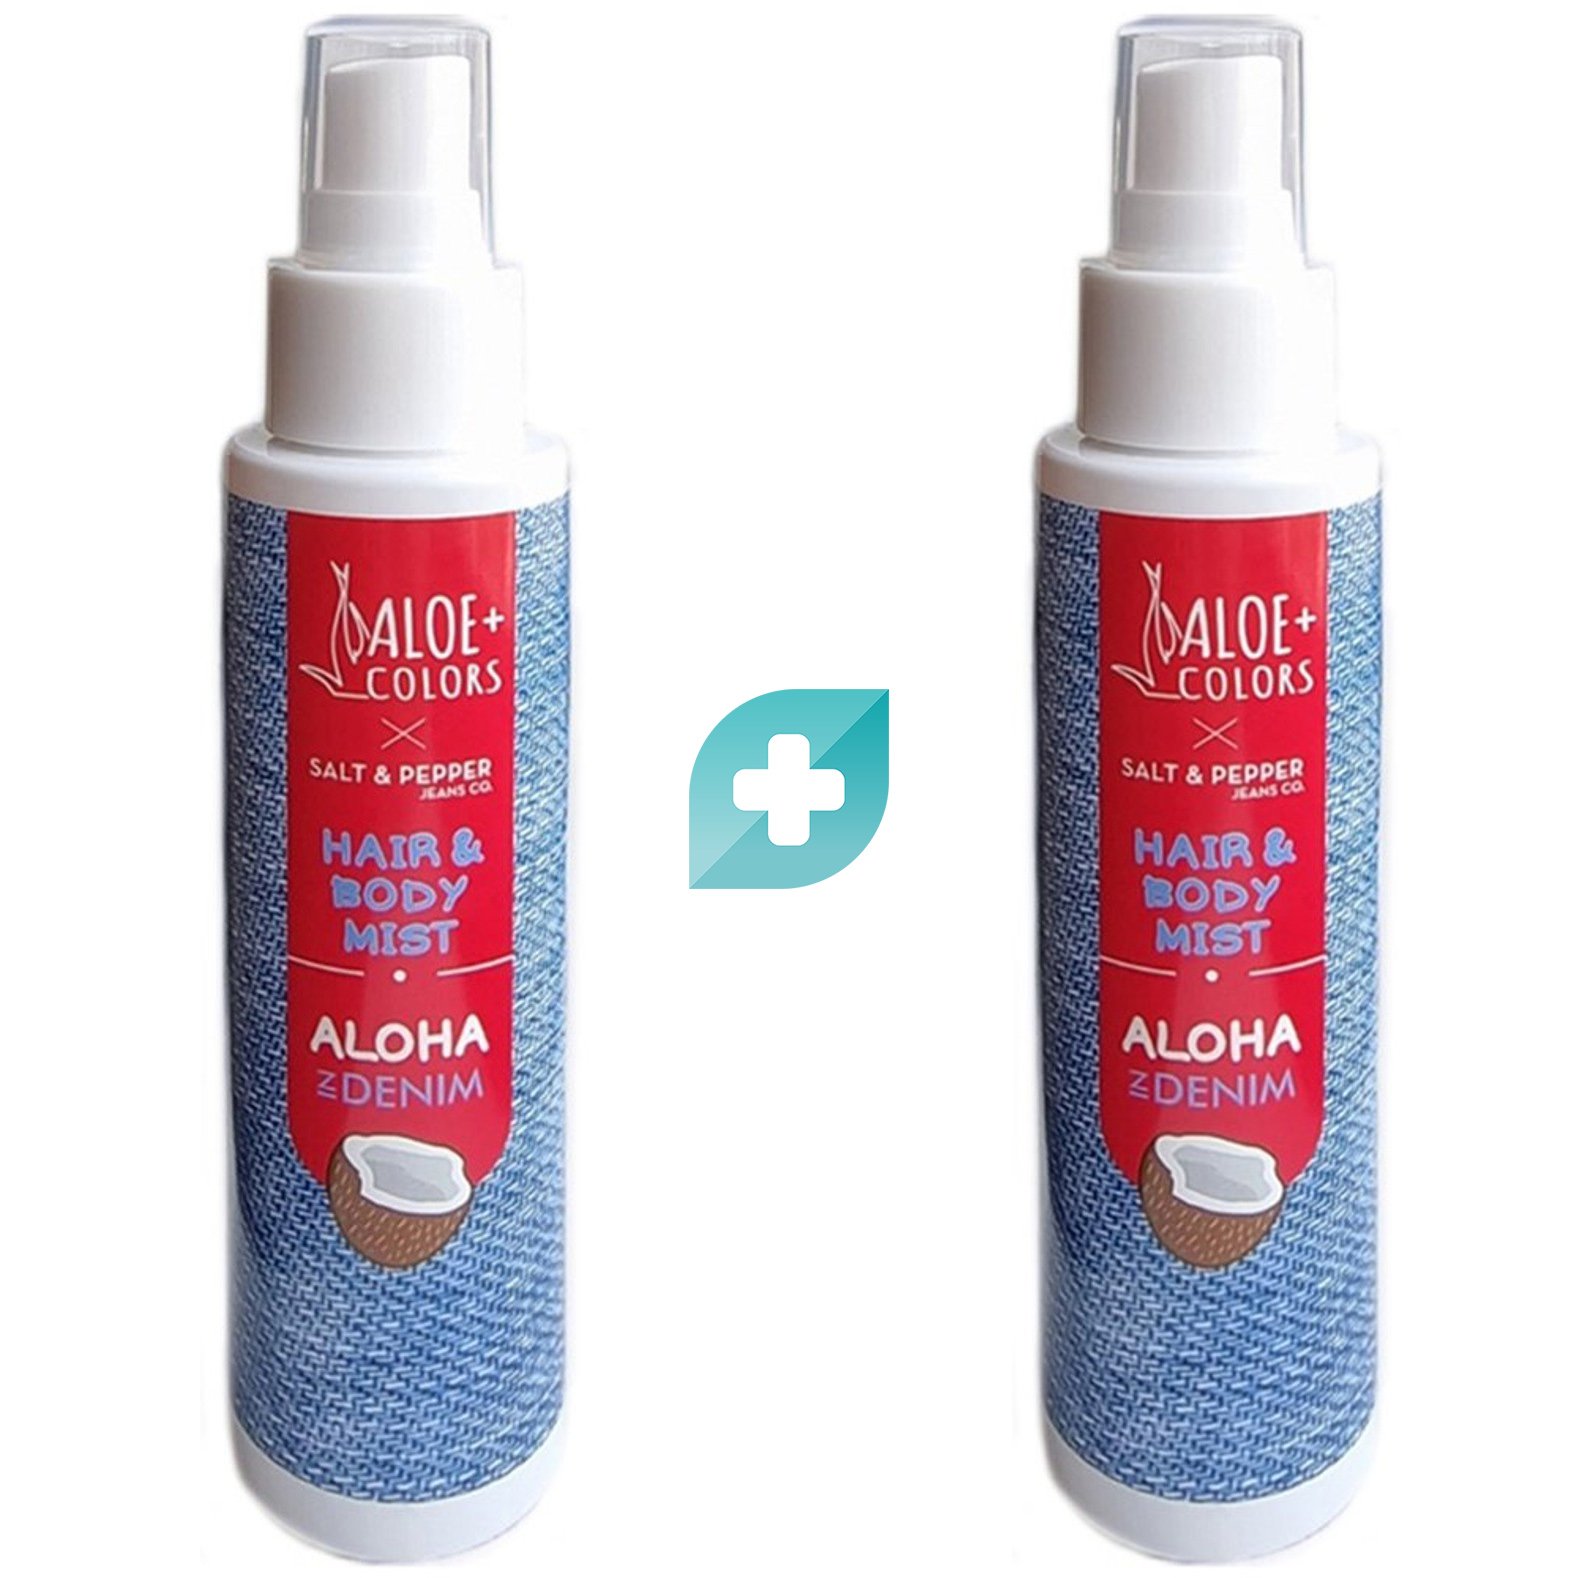 Σετ Aloe+ Colors Aloha In Denim Hair & Body Mist Ενυδατικό Spray Σώματος Μαλλιών με Άρωμα Καρύδας & Monoi 2x100ml